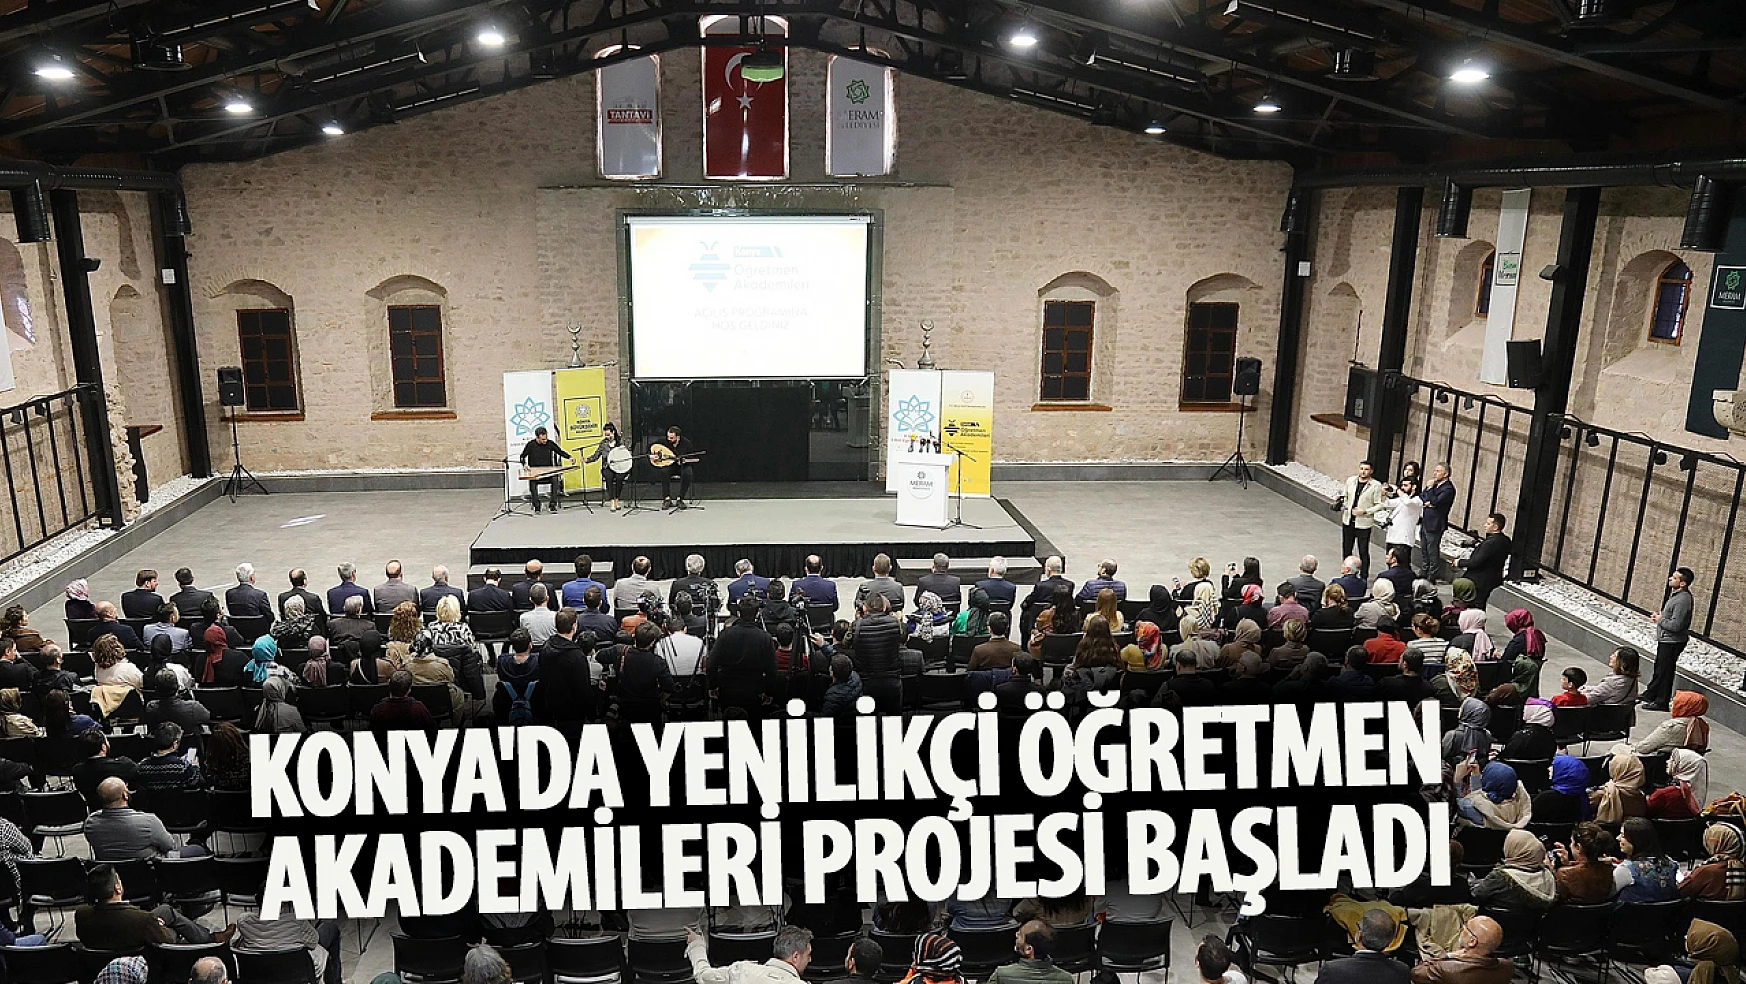 Konya'da Yenilikçi Öğretmen Akademileri Projesi Başladı